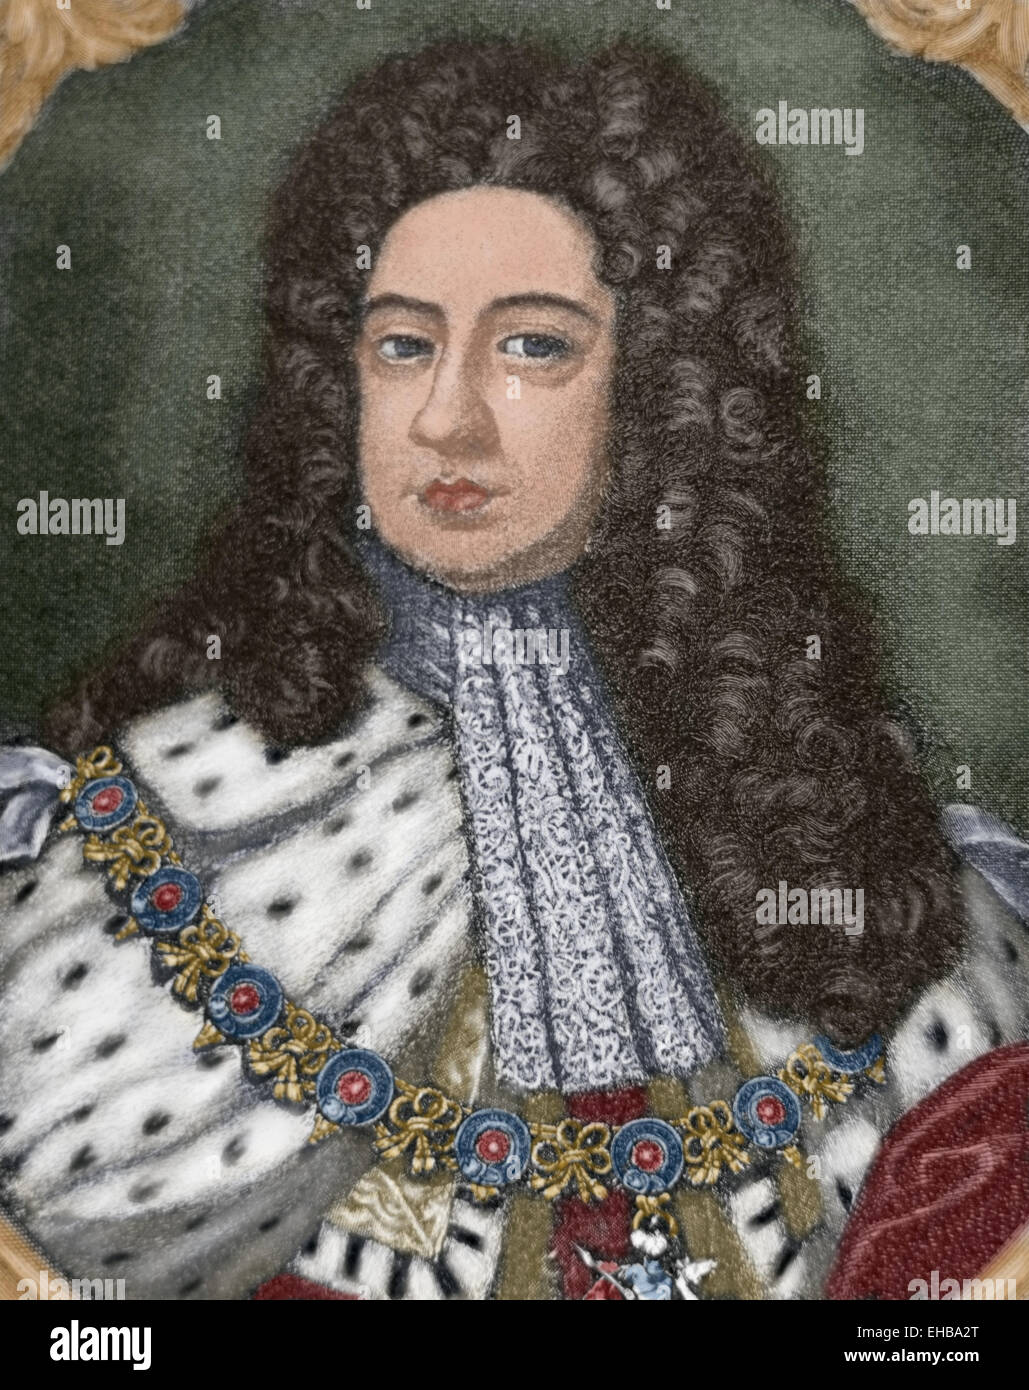 George II (1683-1760). König von Großbritannien und Irland. Kurfürsten des Heiligen Römischen Reiches. Porträt. Gravur. Farbige. Stockfoto